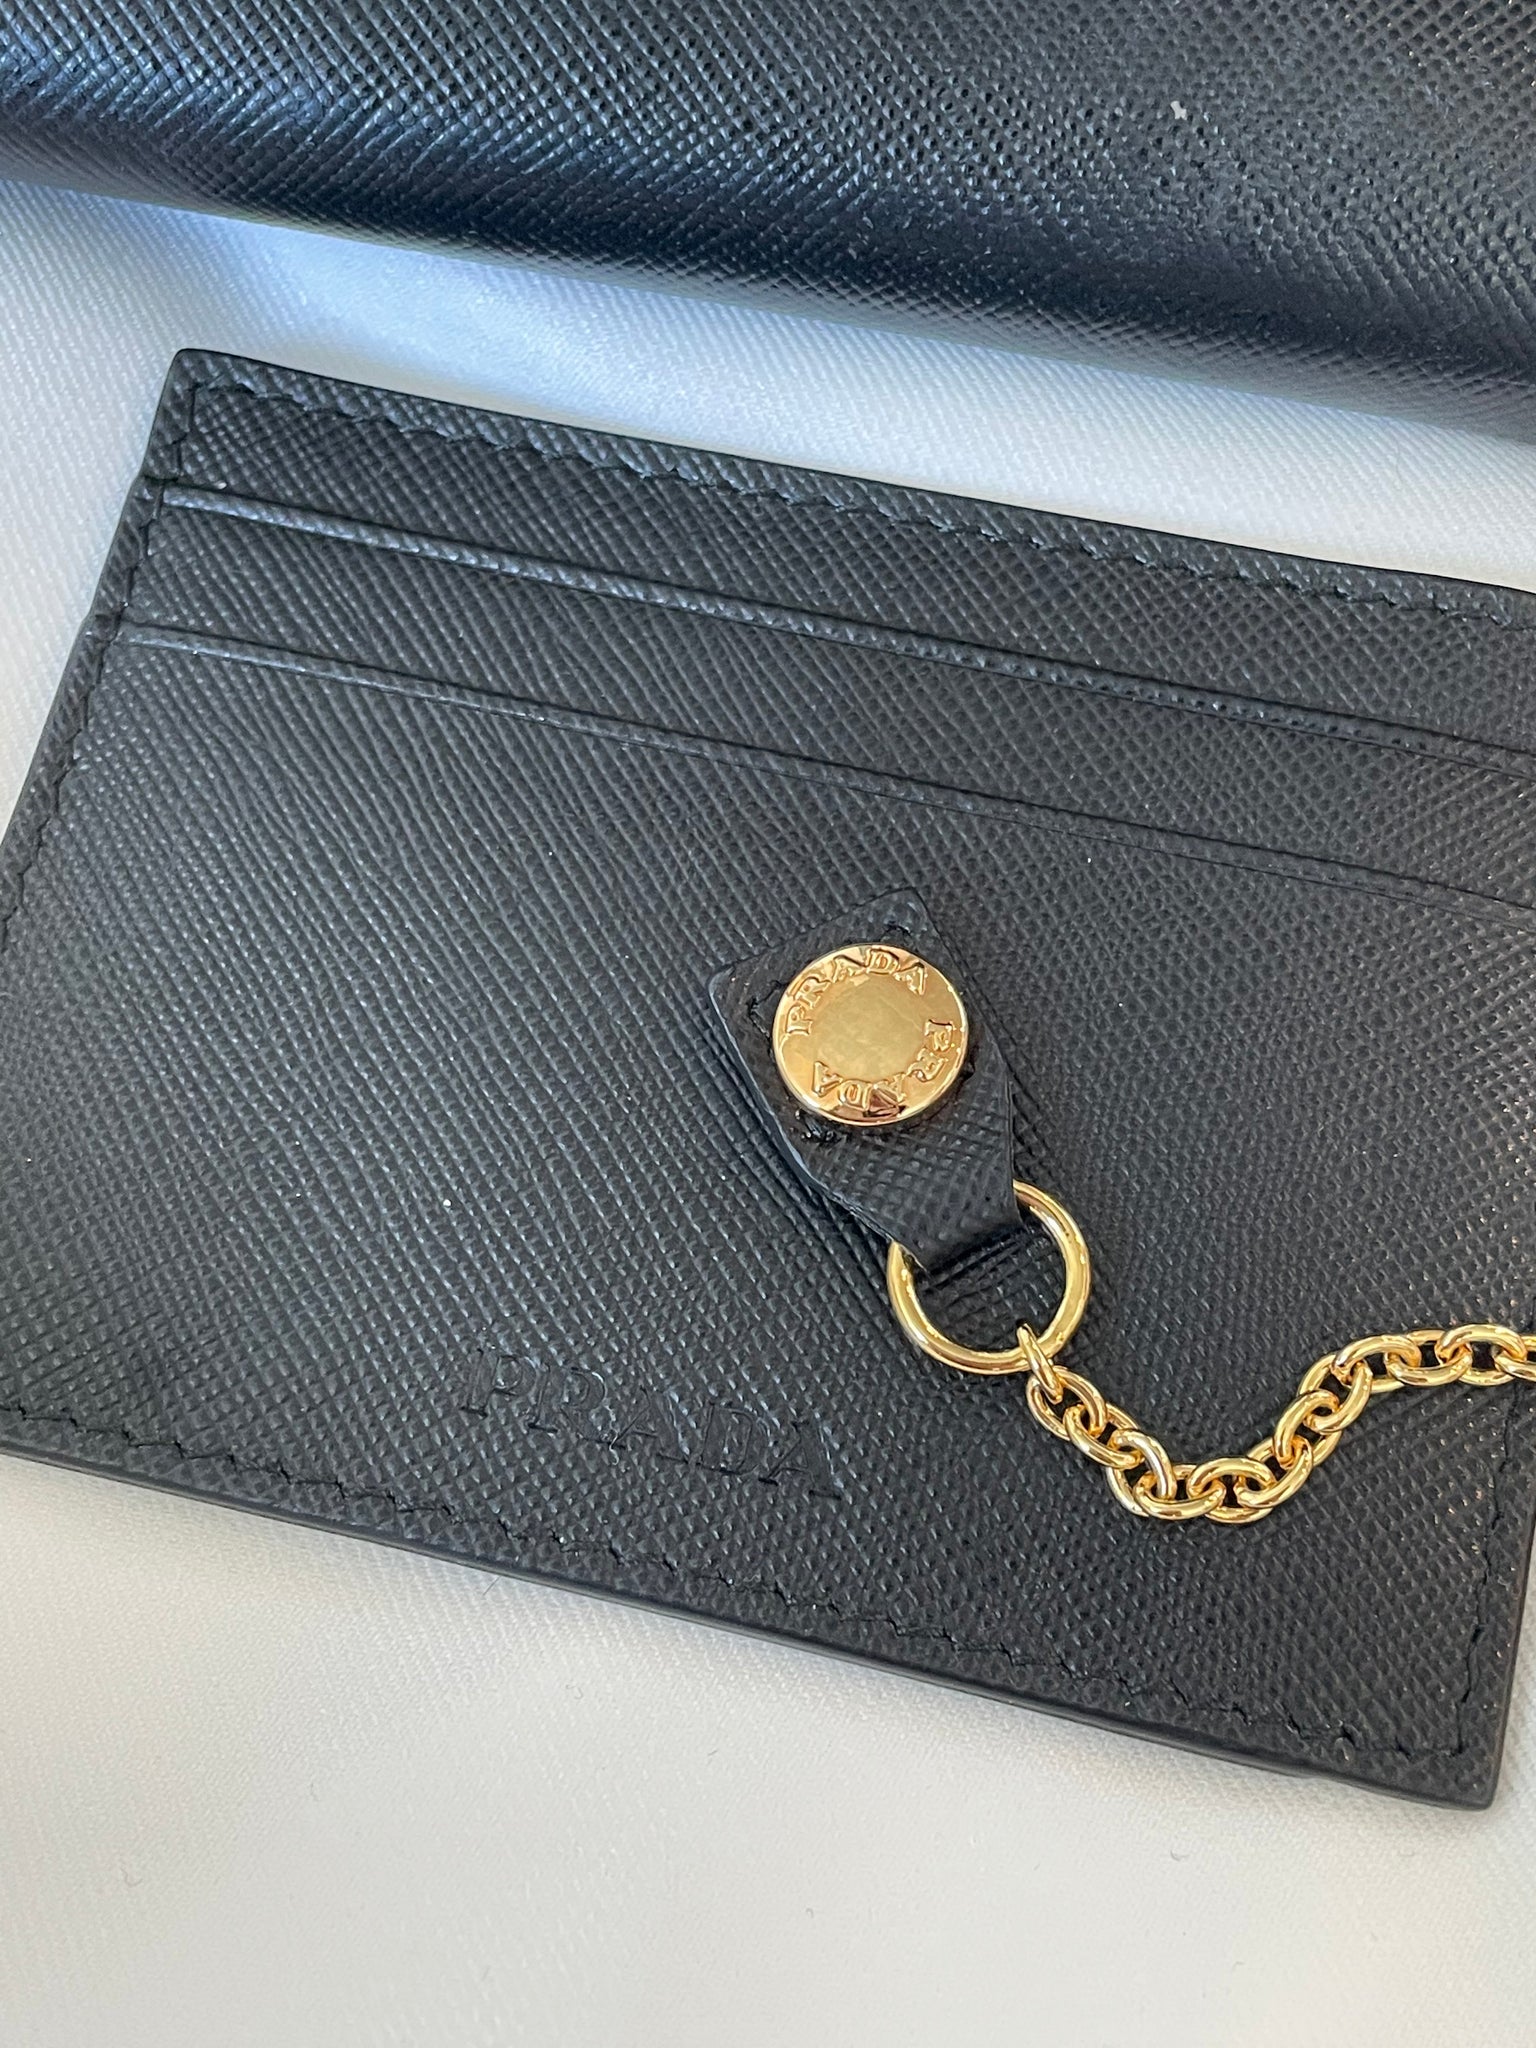 Prada Saffiano wallet – Shop Canela Vintage